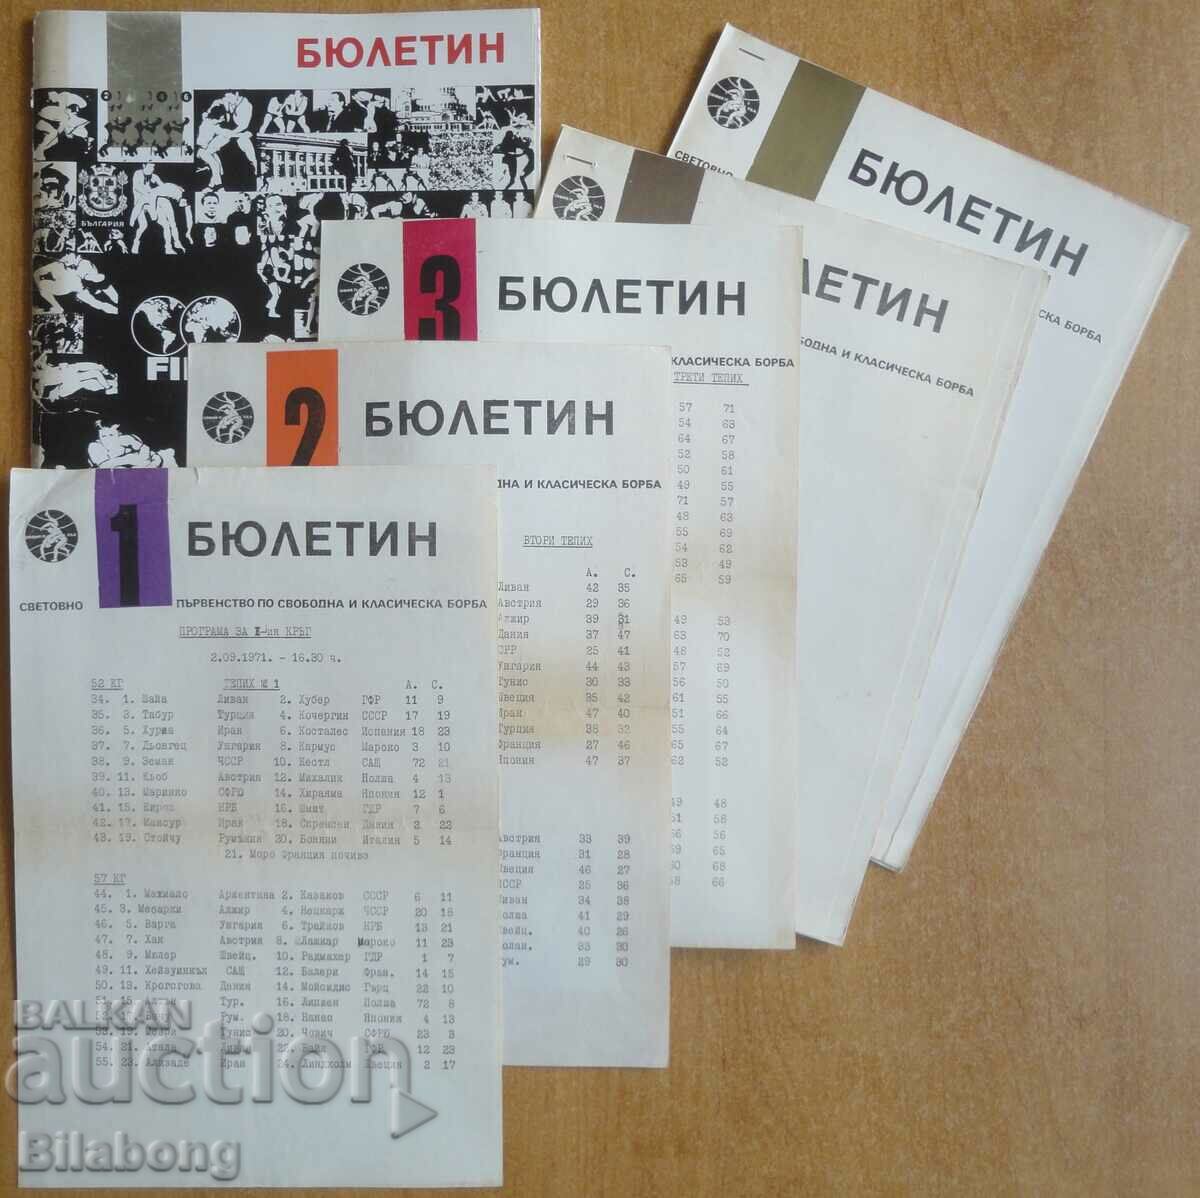 Documente pentru Campionatul Mondial de lupte din Sofia 1971.